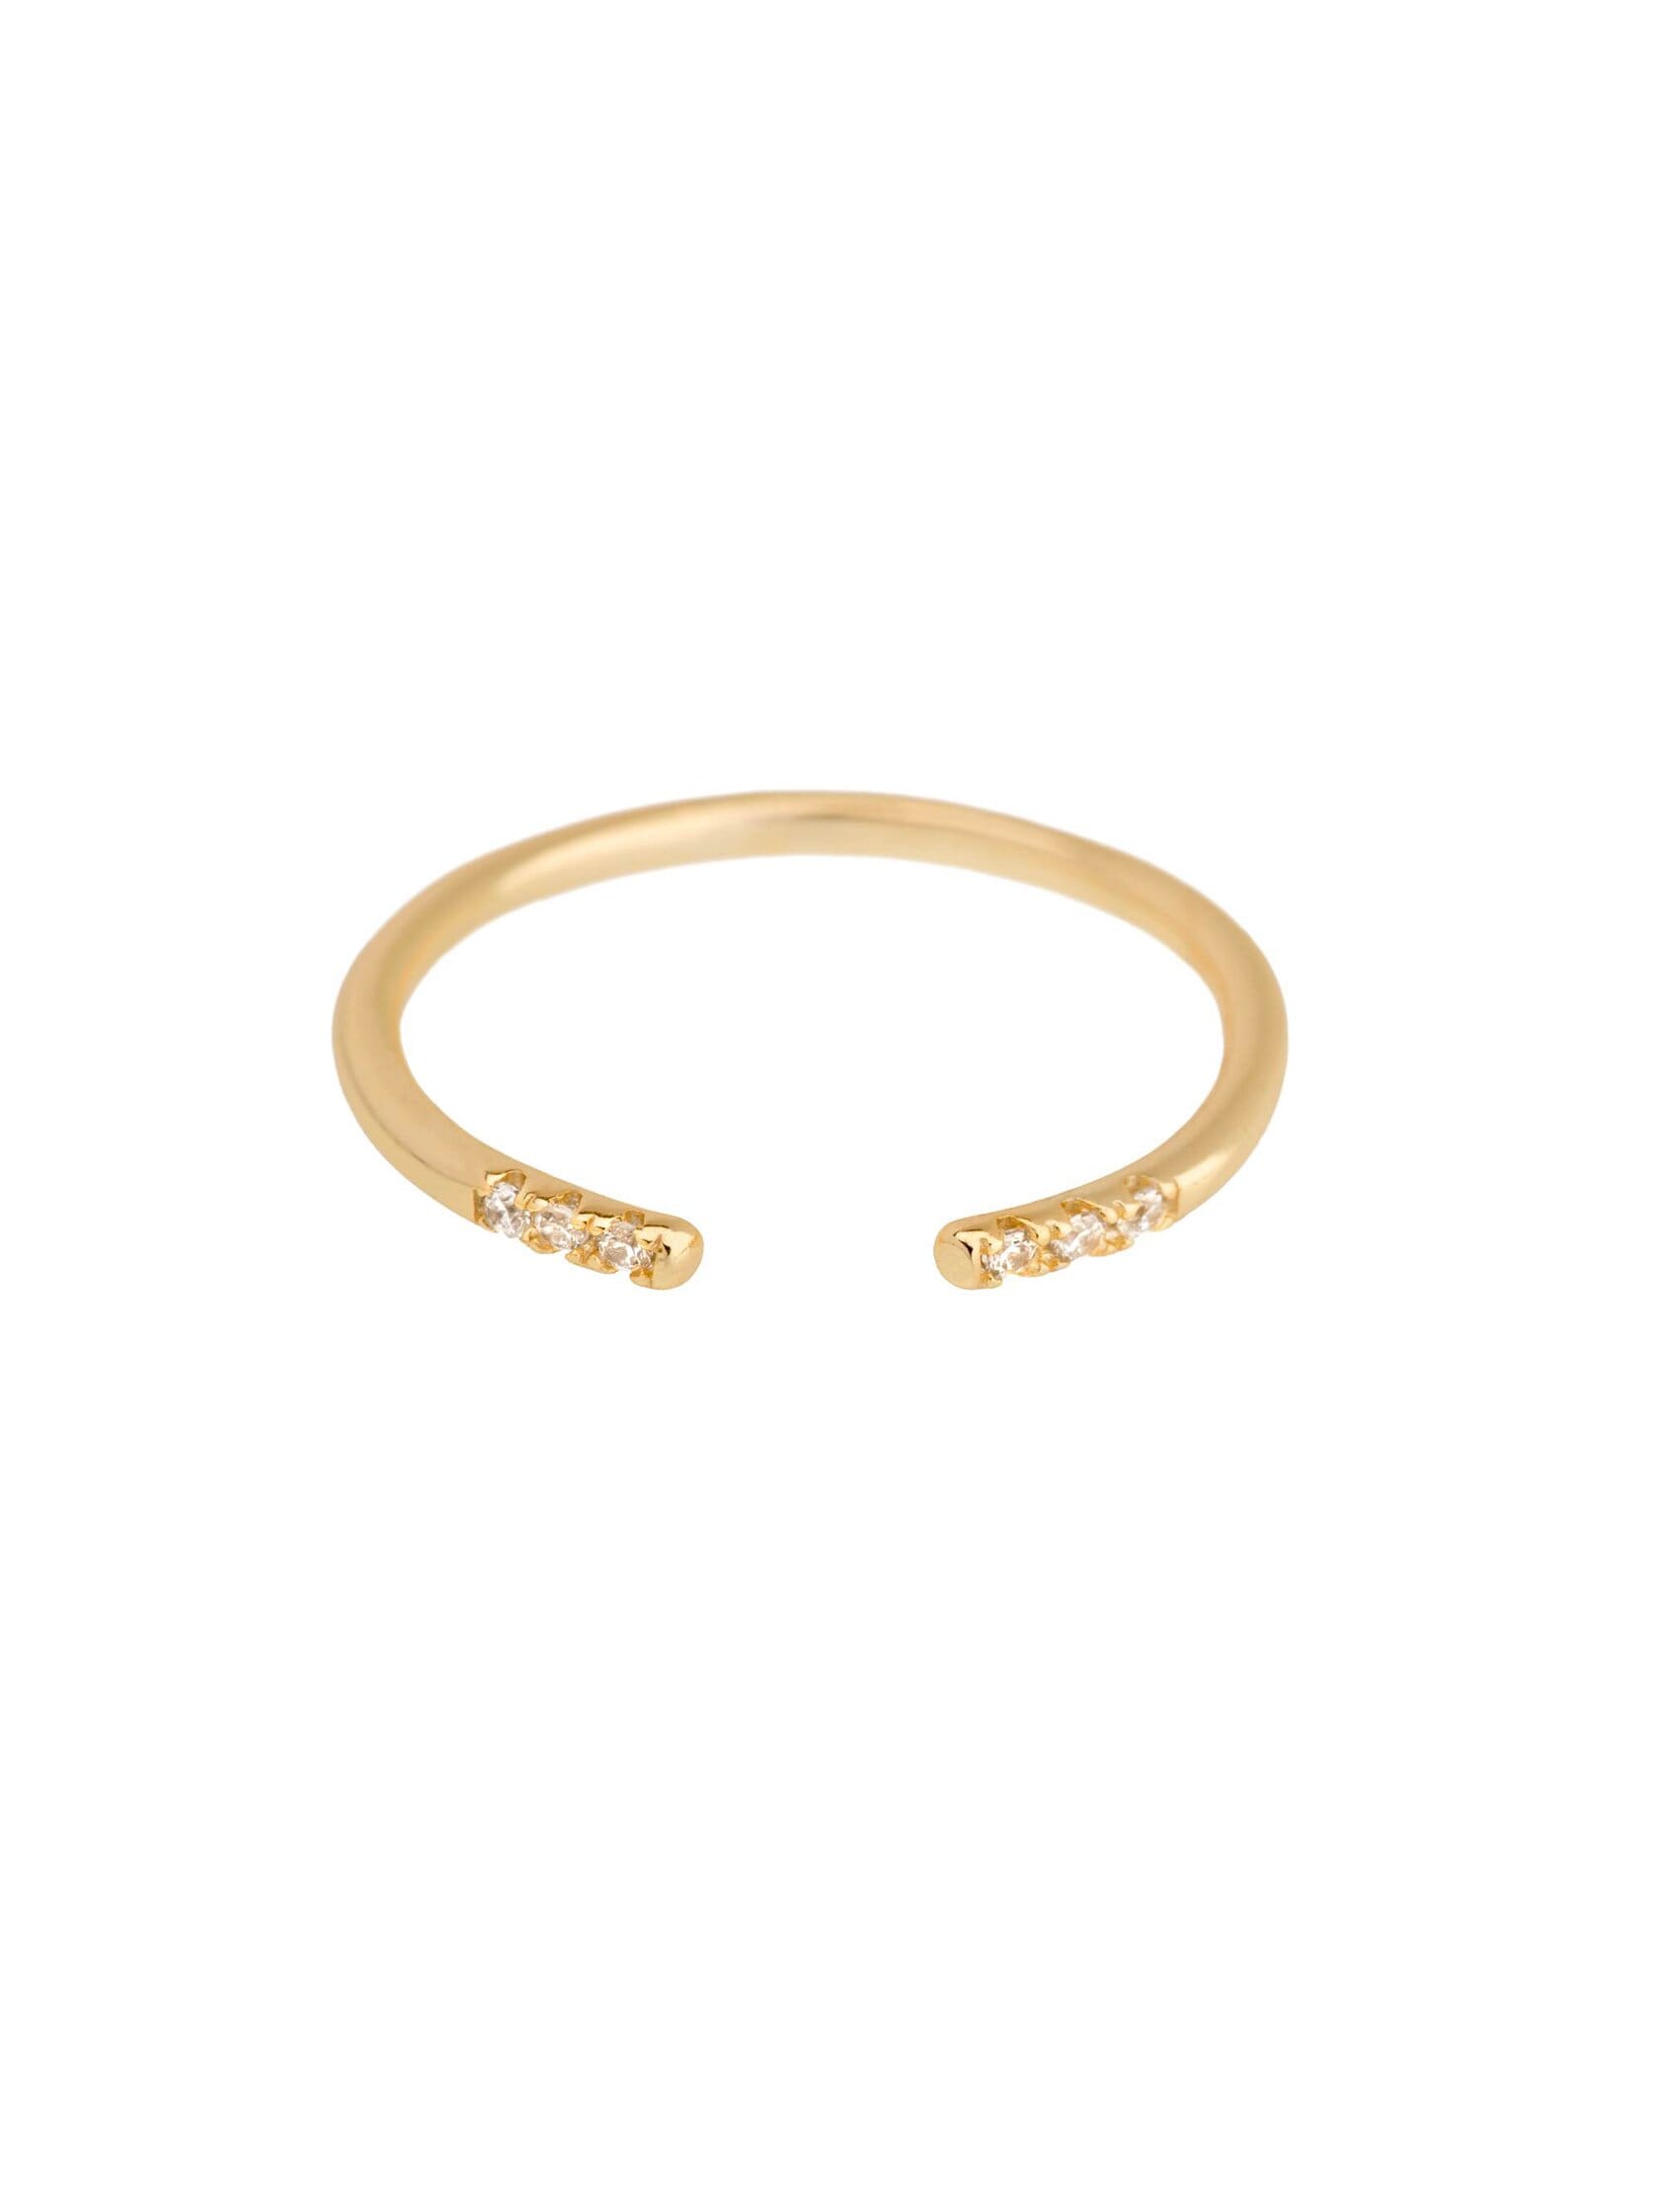 SHASHI Ava Adjustable Ring in Gold